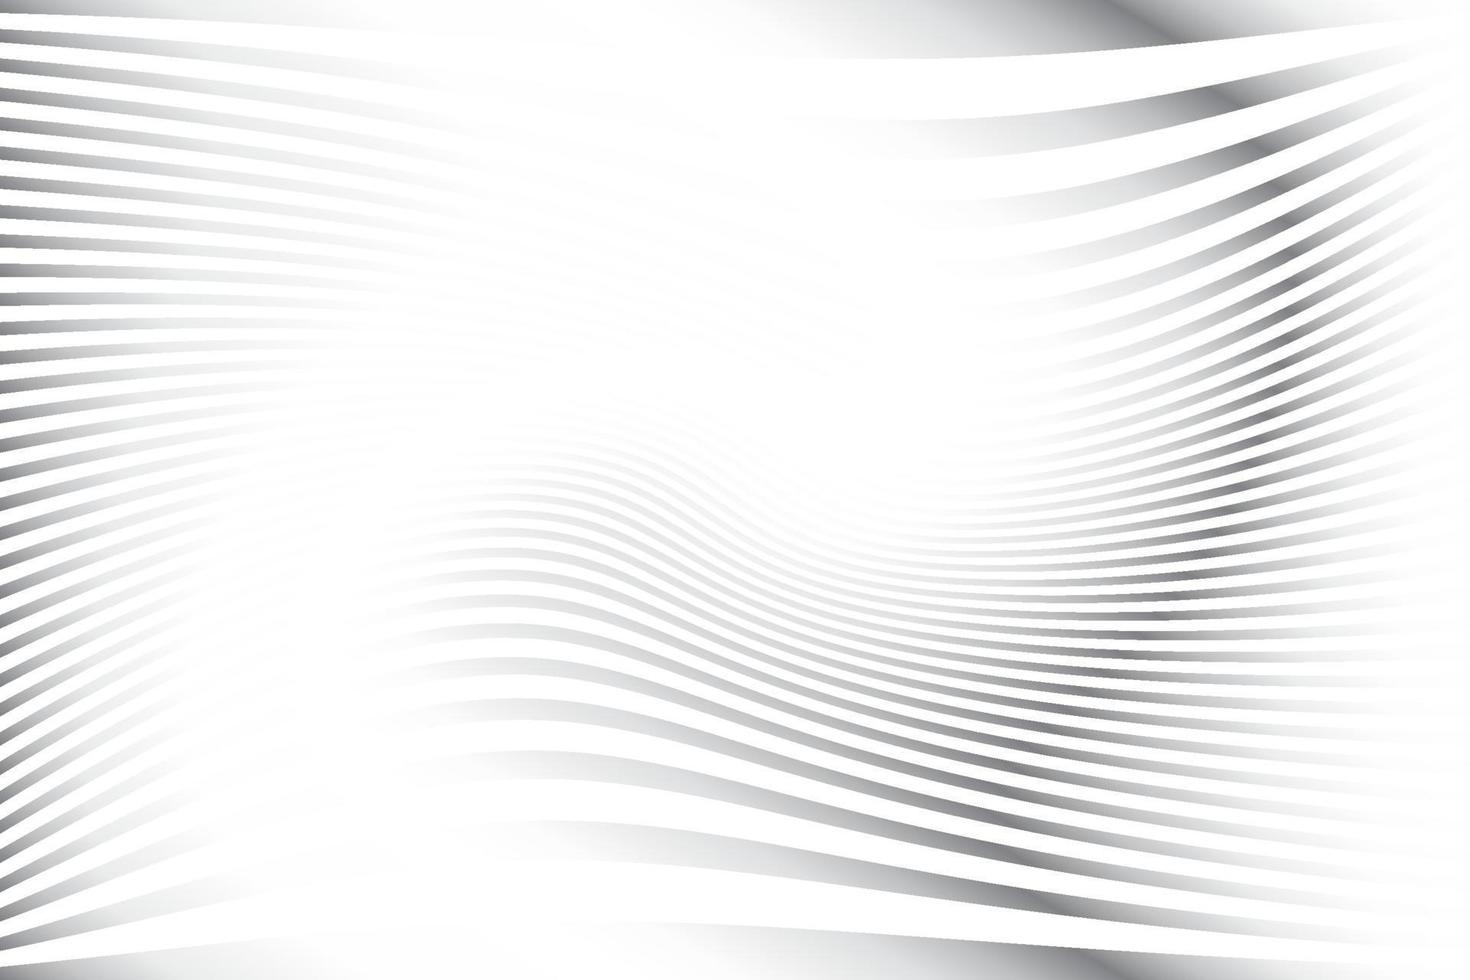 couleur blanche et grise abstraite, fond de rayures de conception moderne avec forme ronde géométrique, motif de vague. illustration vectorielle. vecteur